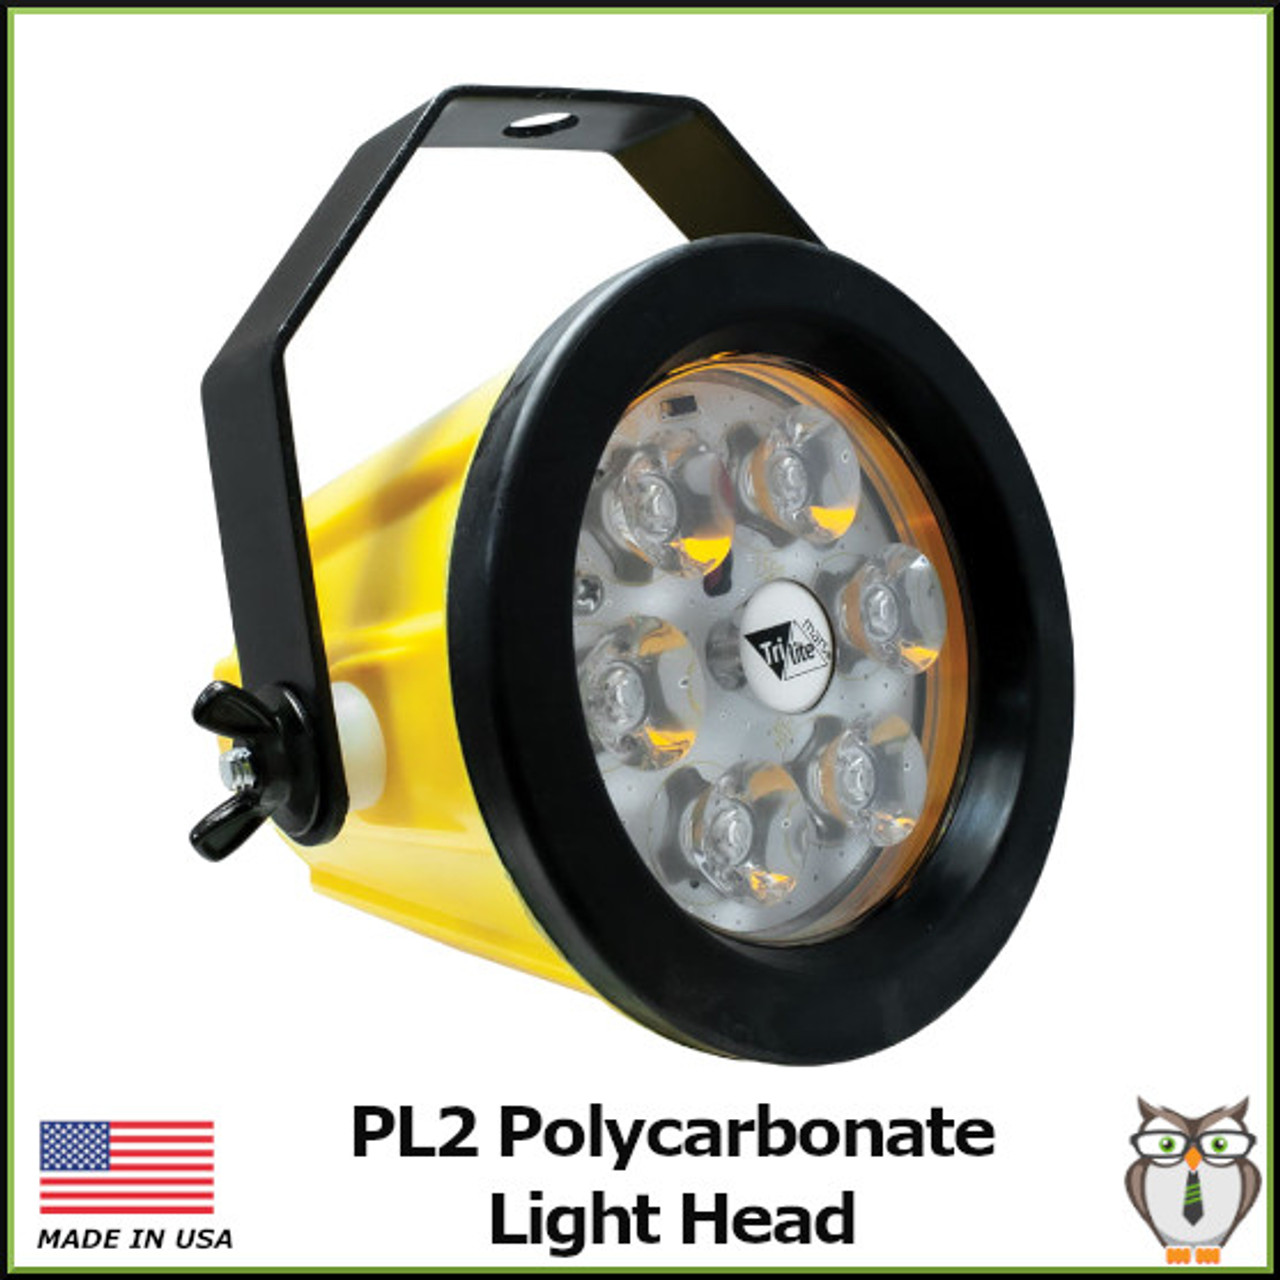 PL2 Polycartbonate Light Head - Light Only